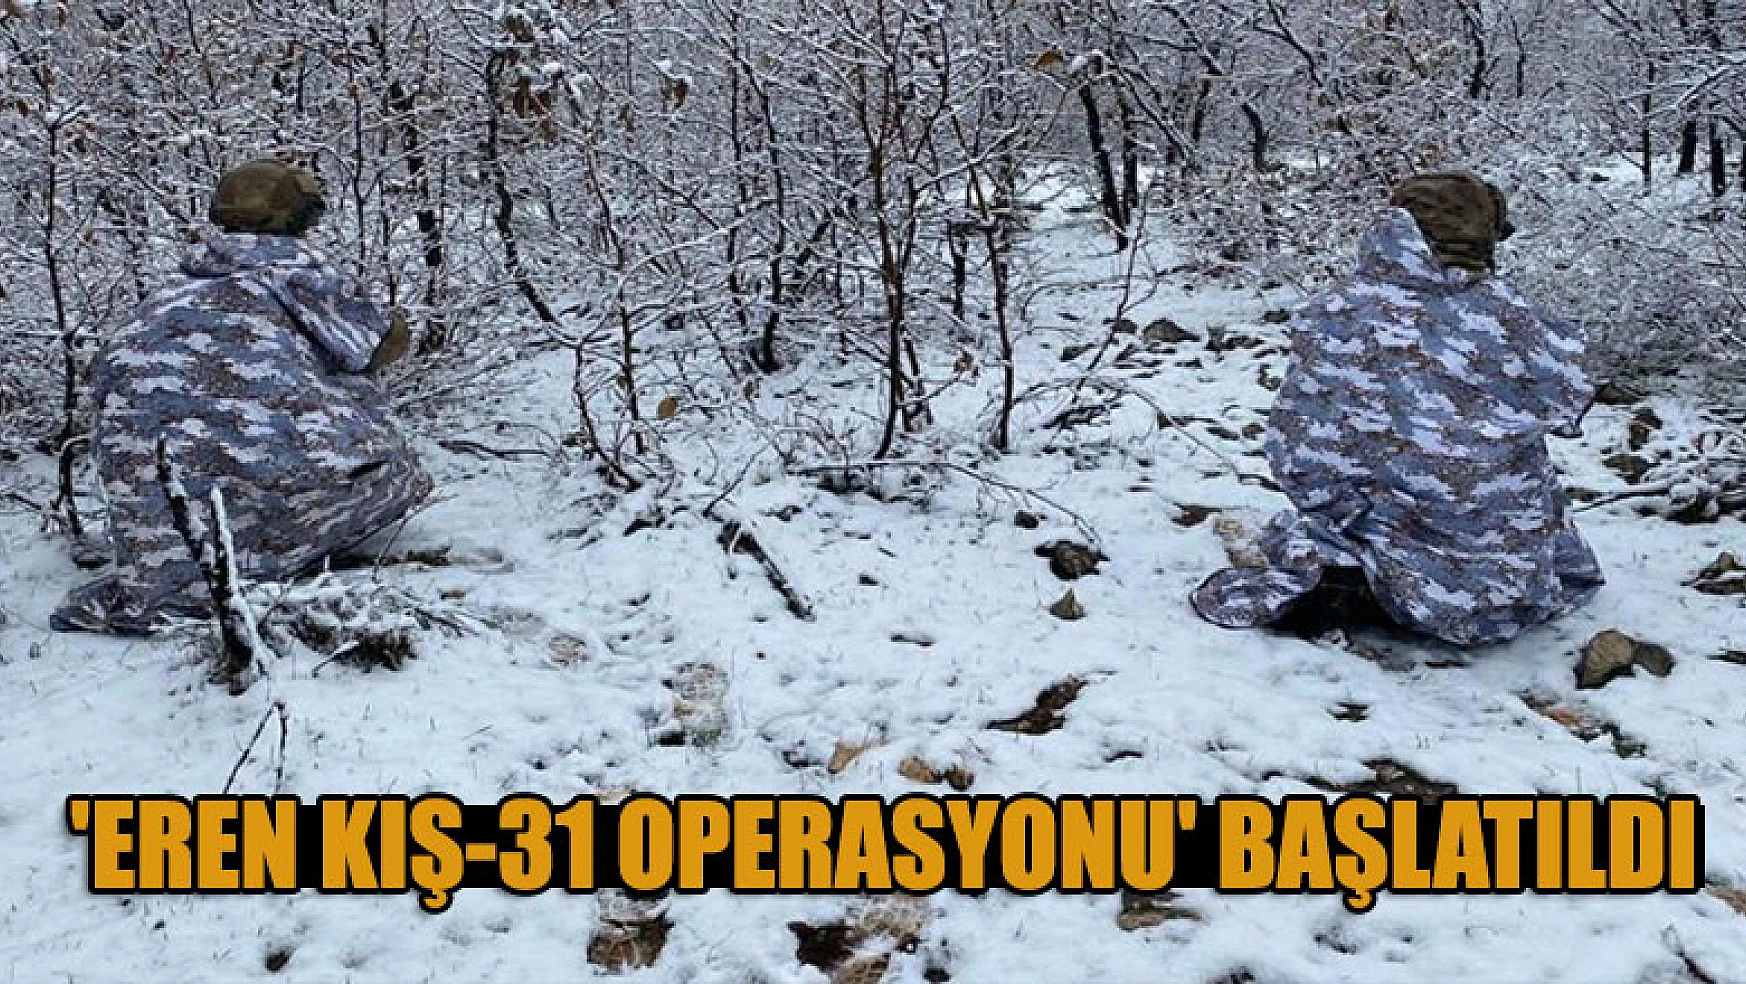 'Eren Kış-31 Operasyonu' başlatıldı